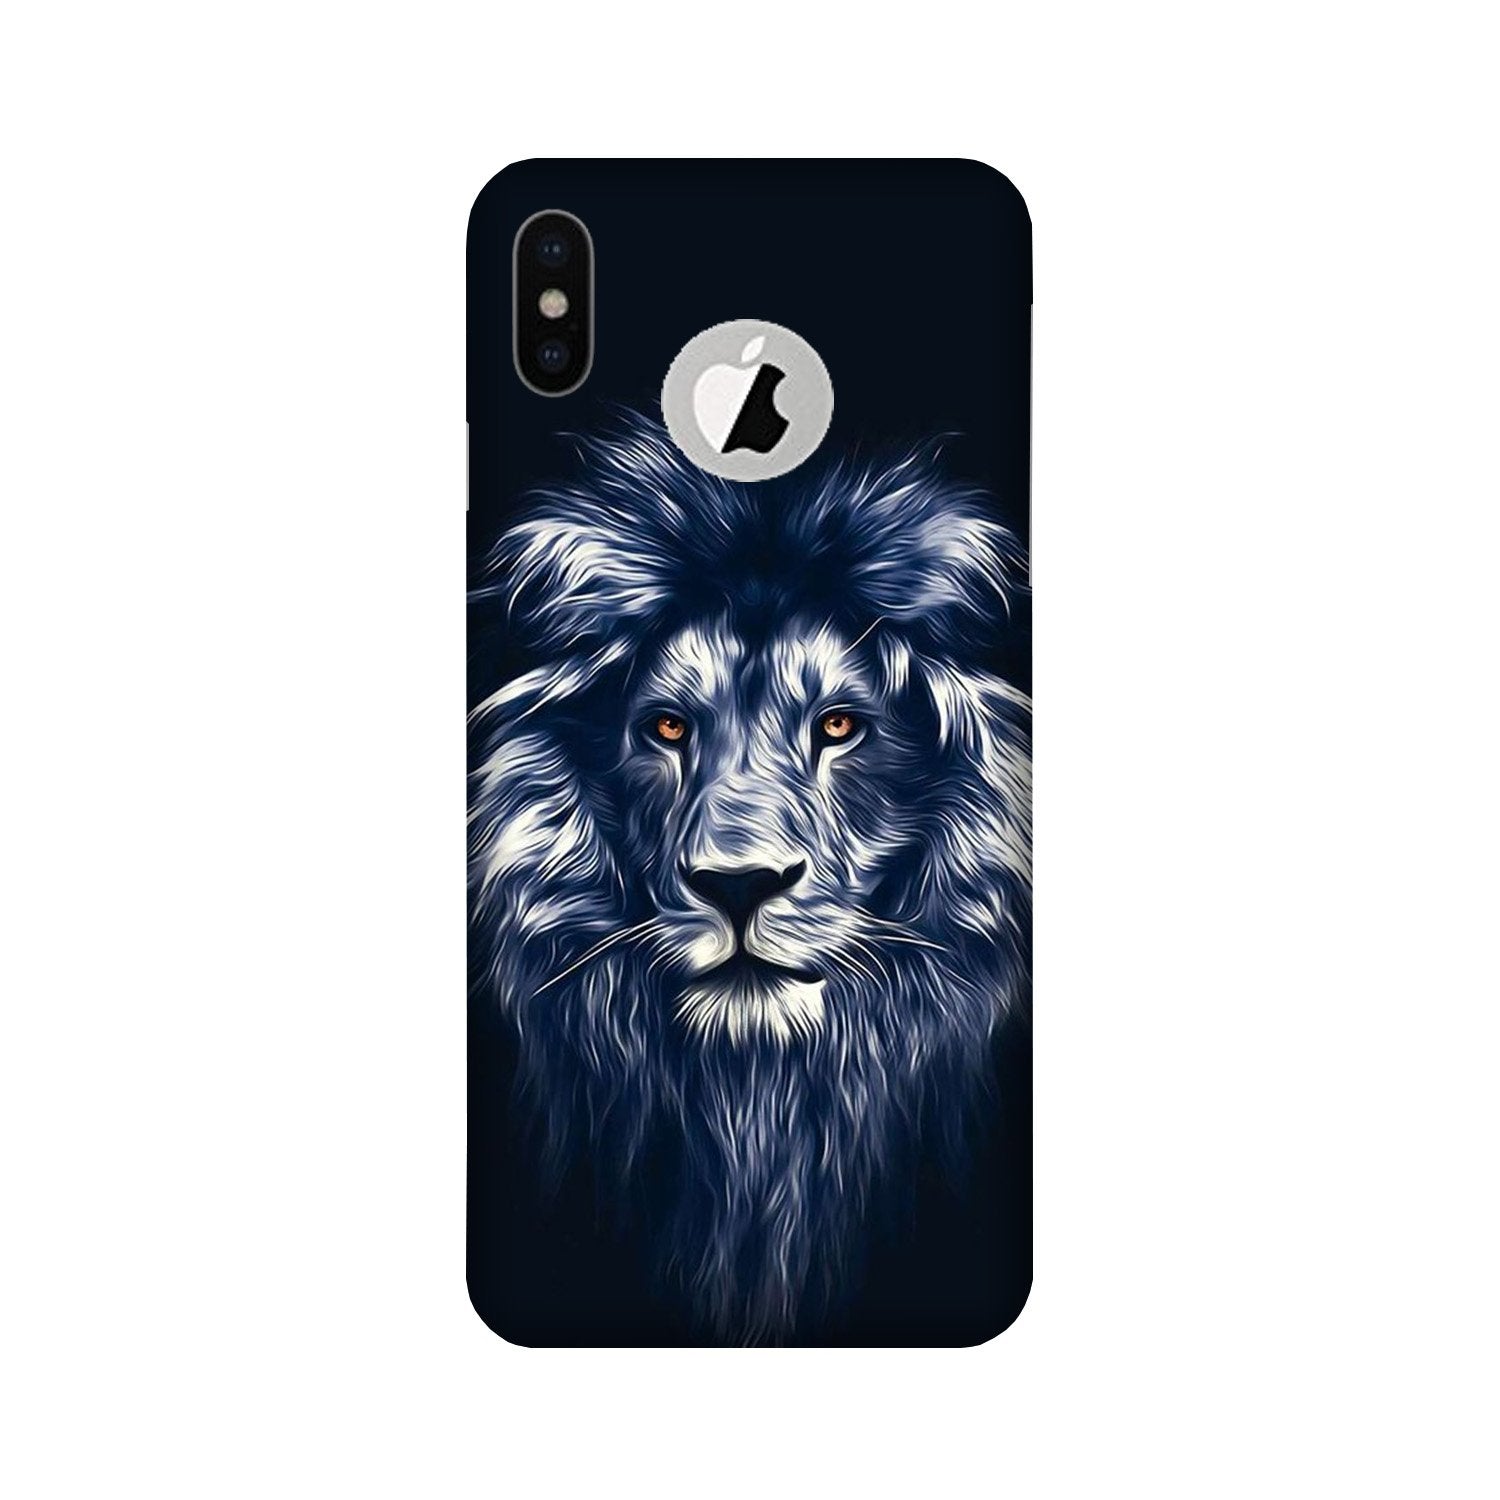 Lion Case for iPhone X logo cut (Design No. 281)